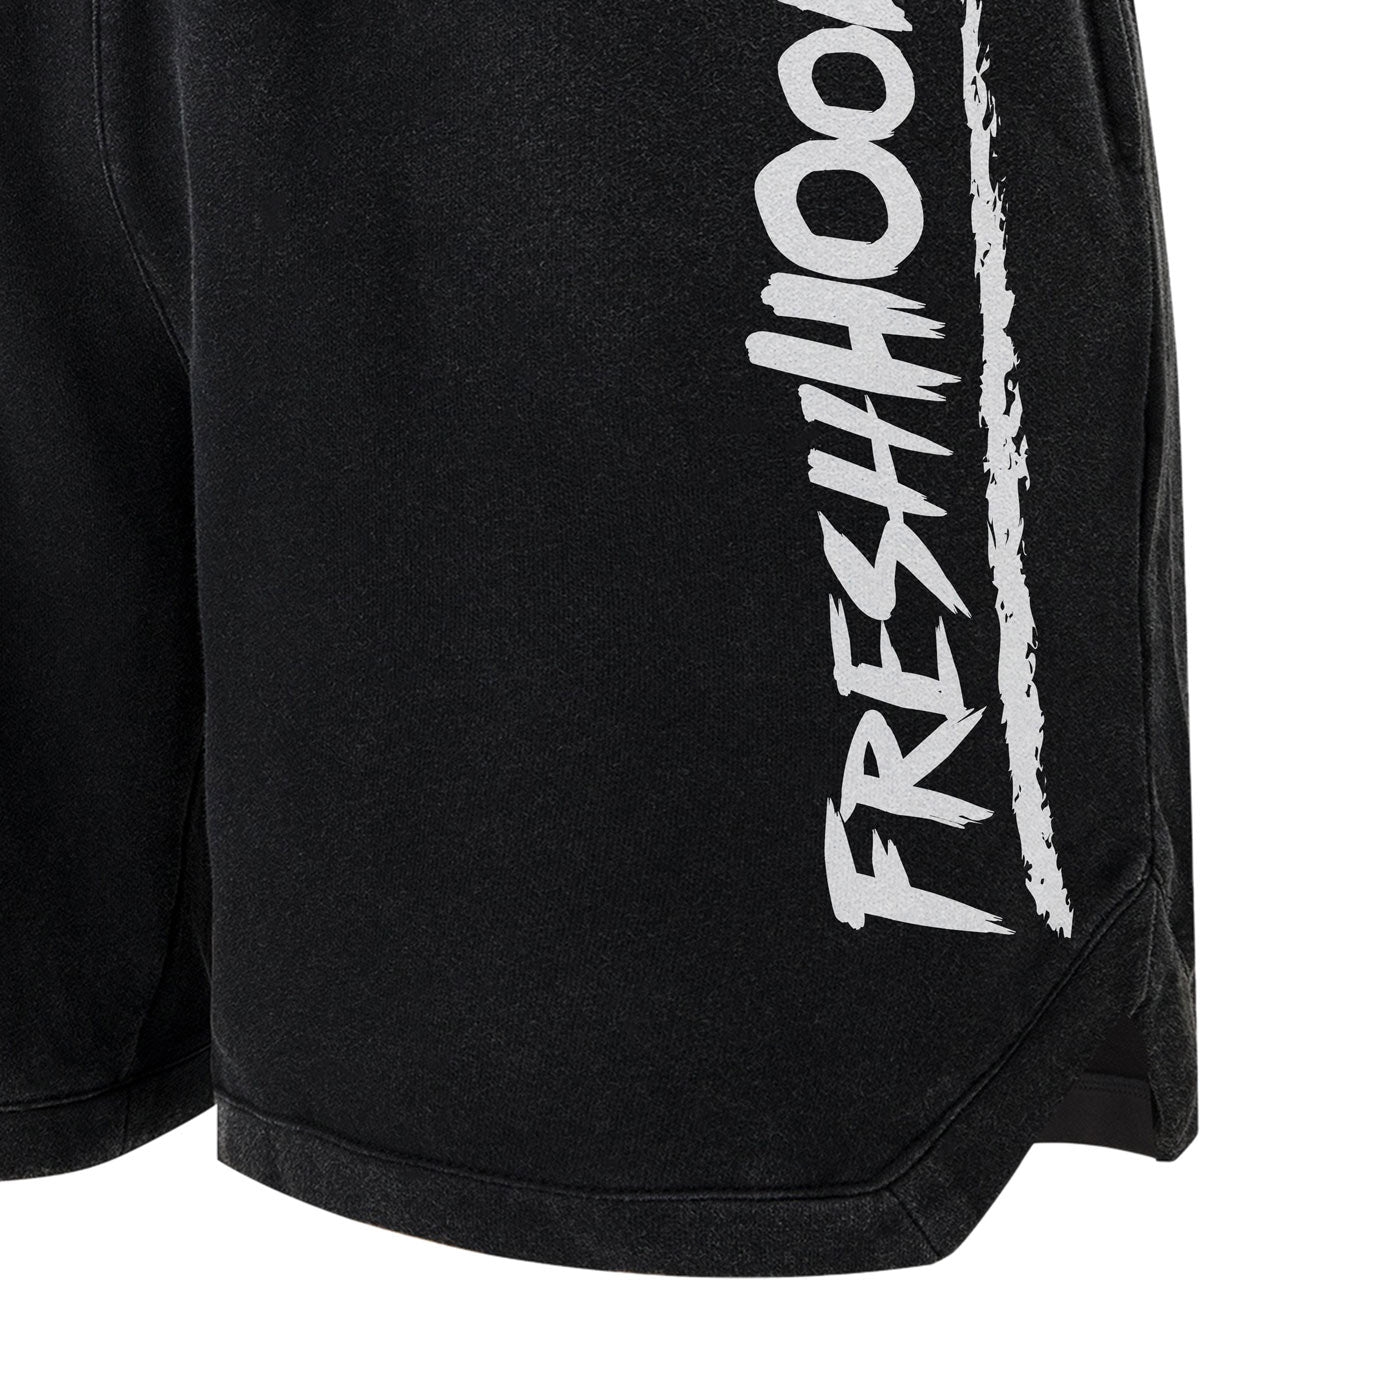 FRESHHOODS Black Shorts